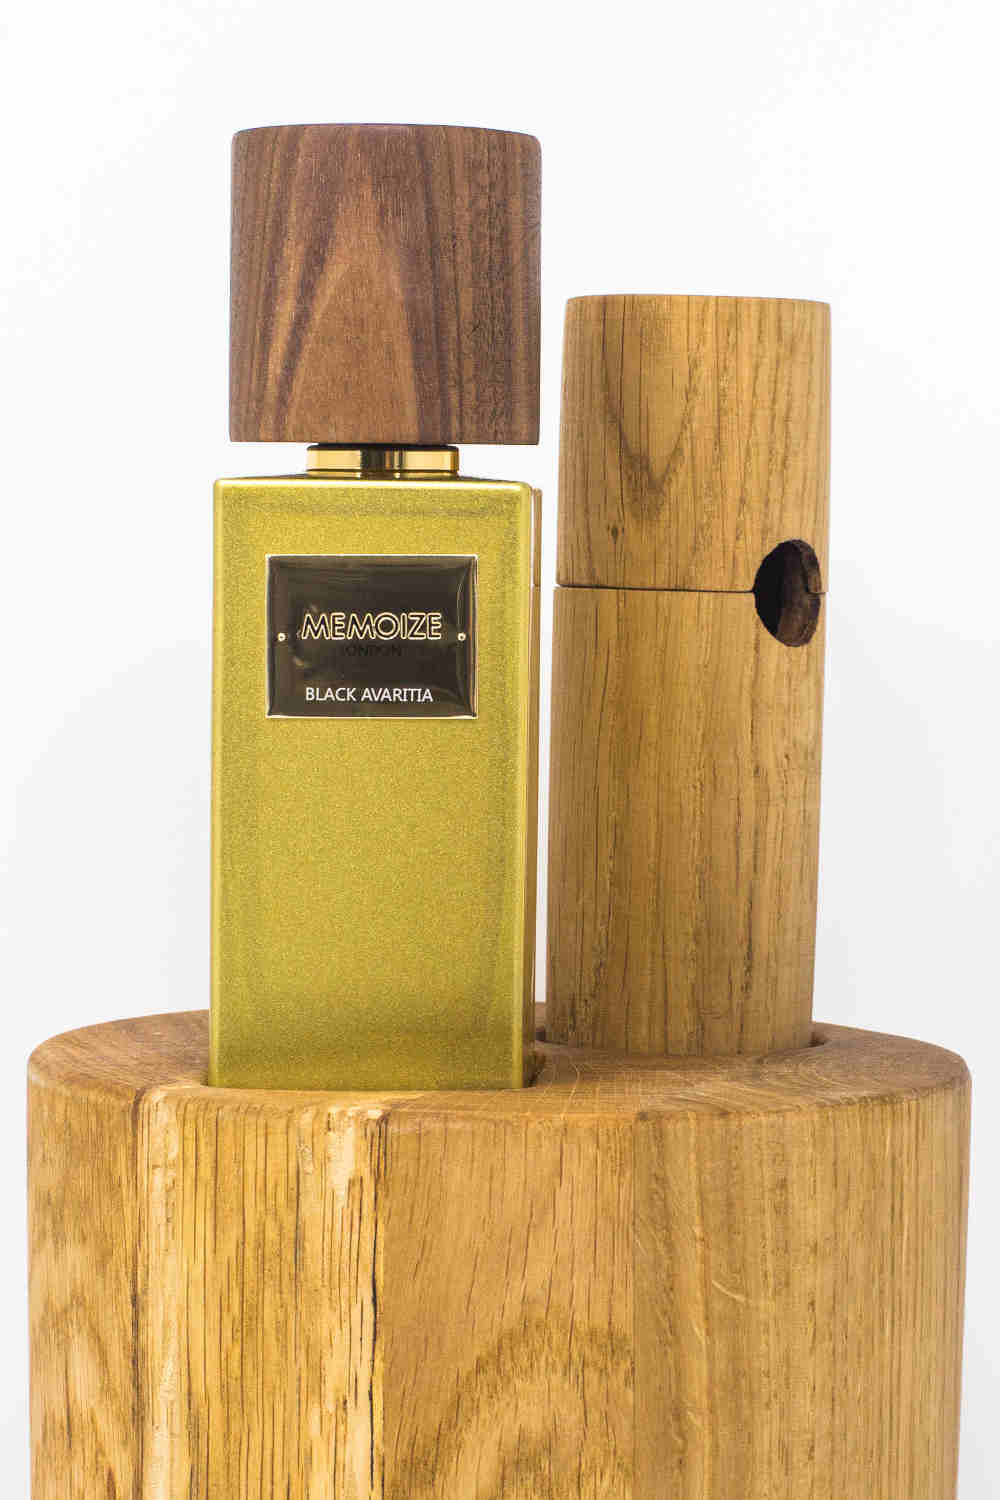 Solid oak designs | Memoize Luxury Perfume